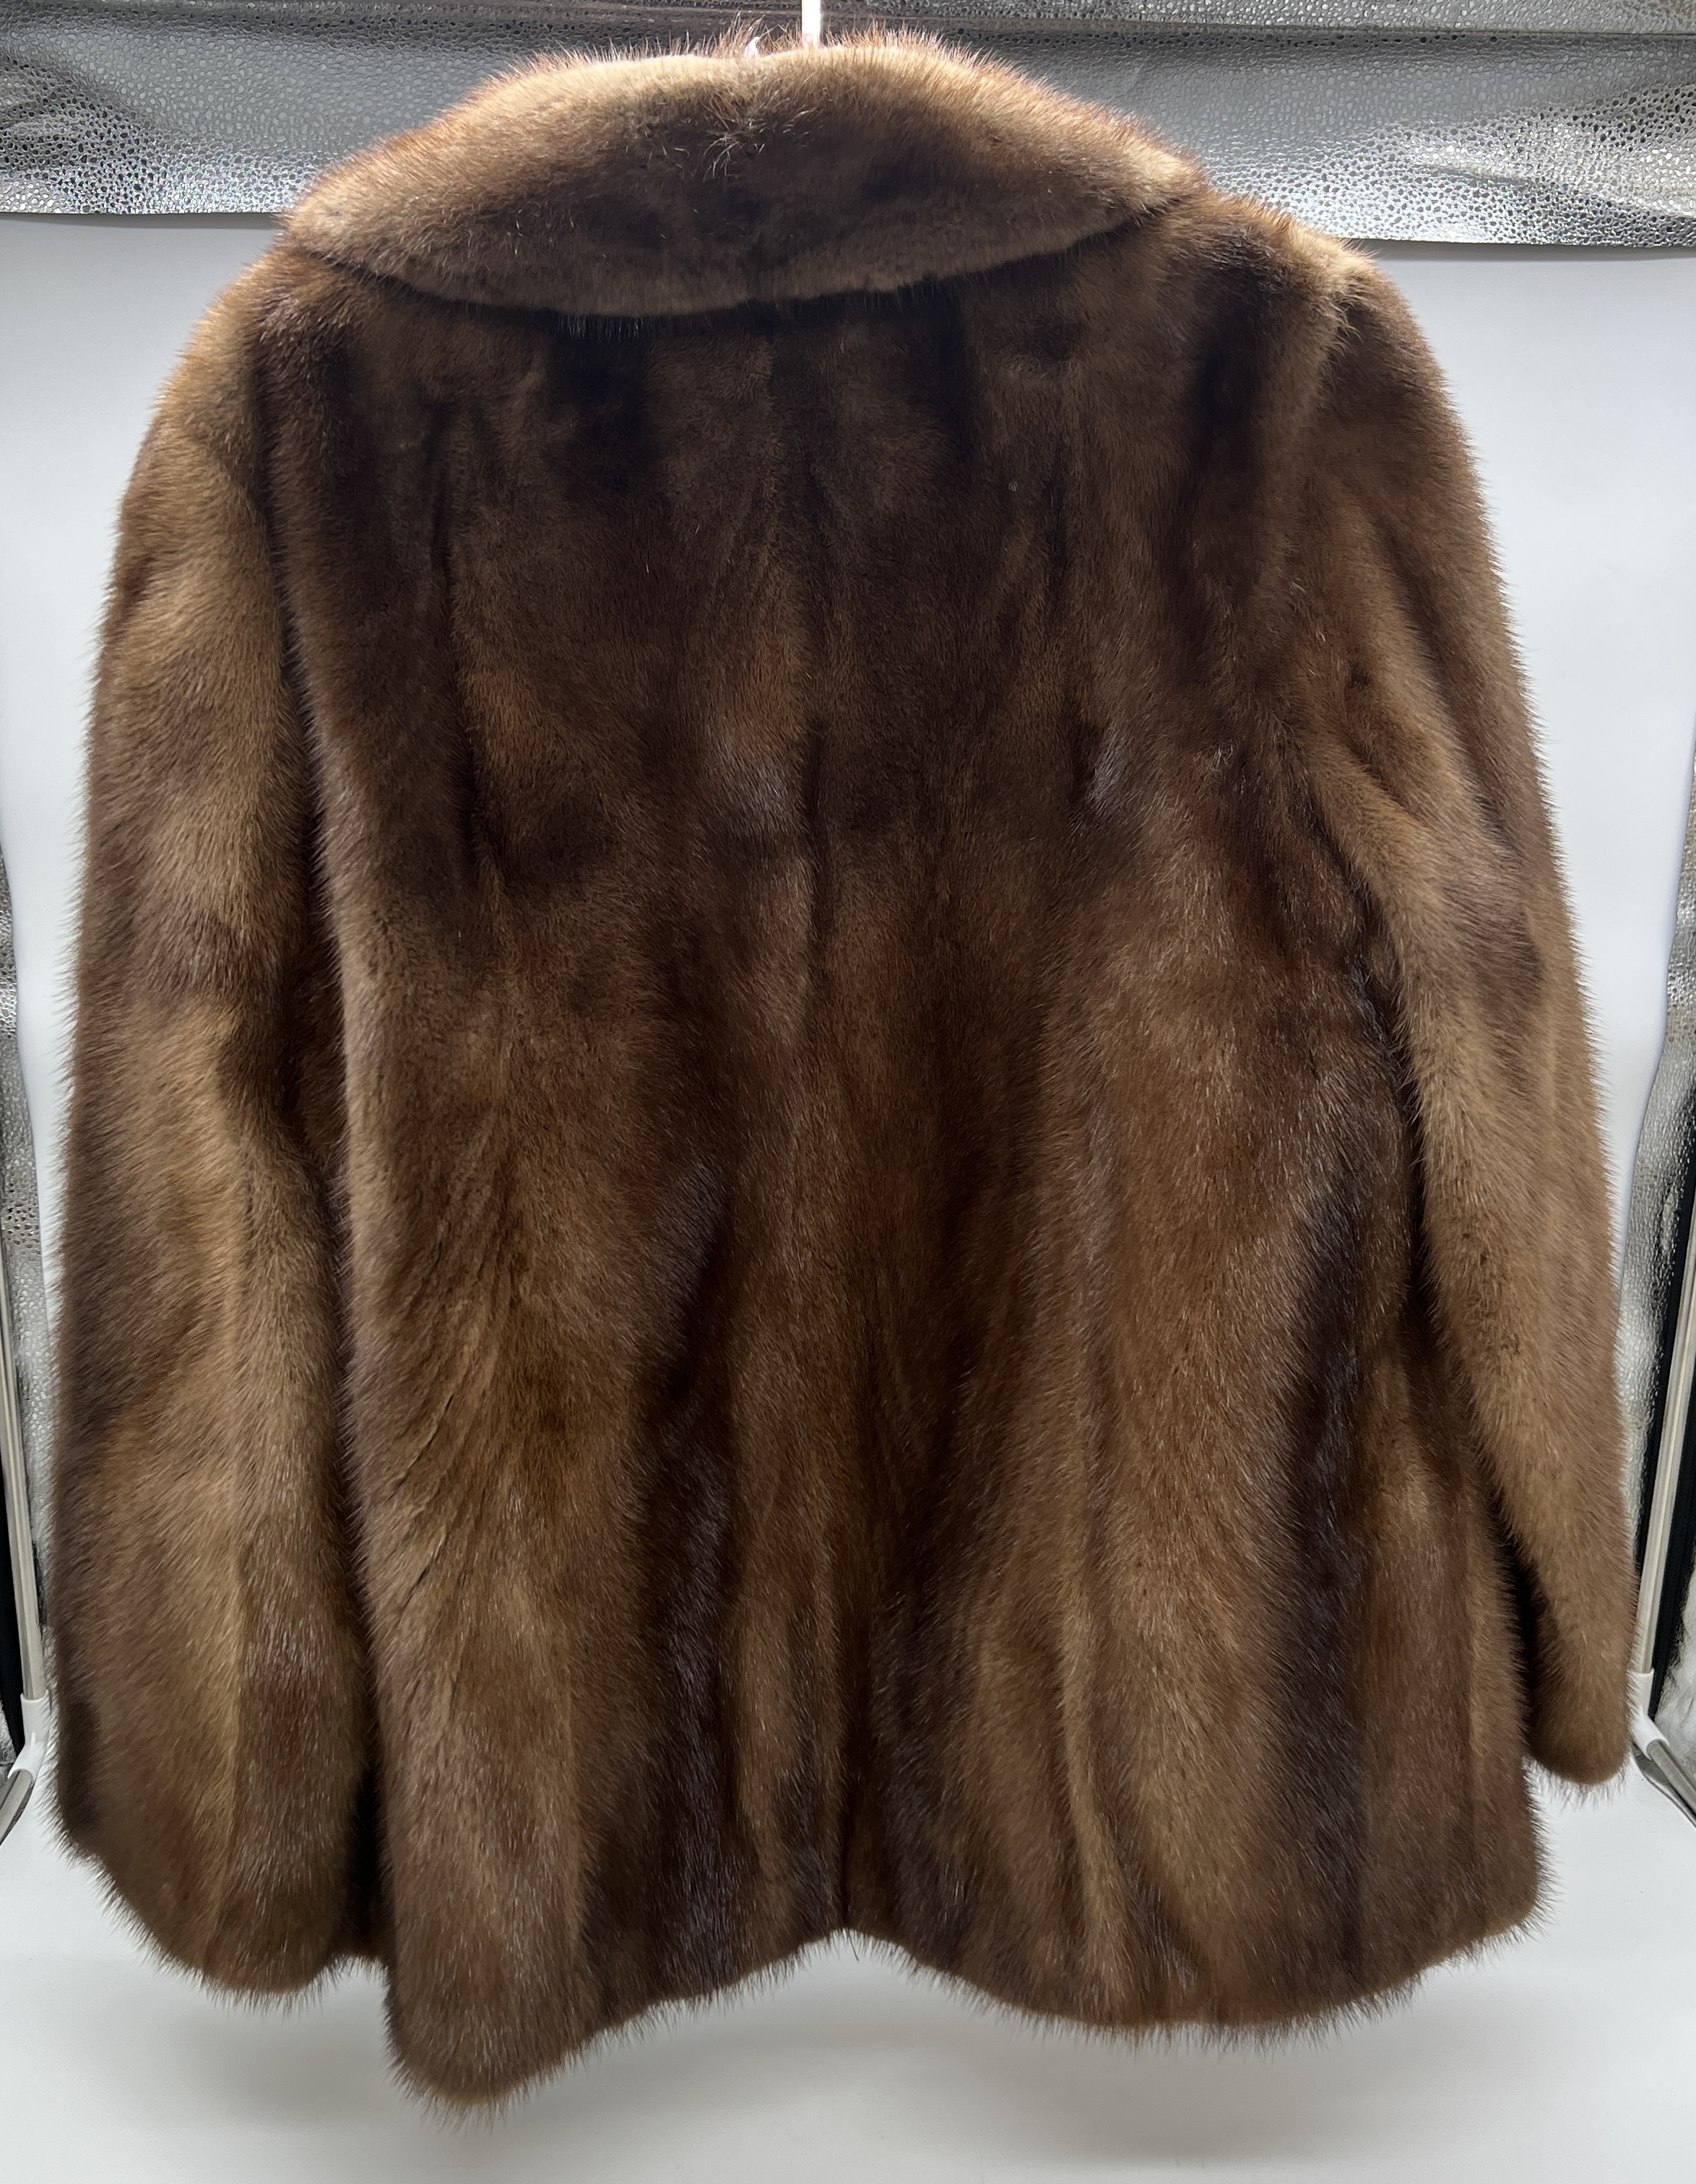 A vintage fur jacket - Image 3 of 3